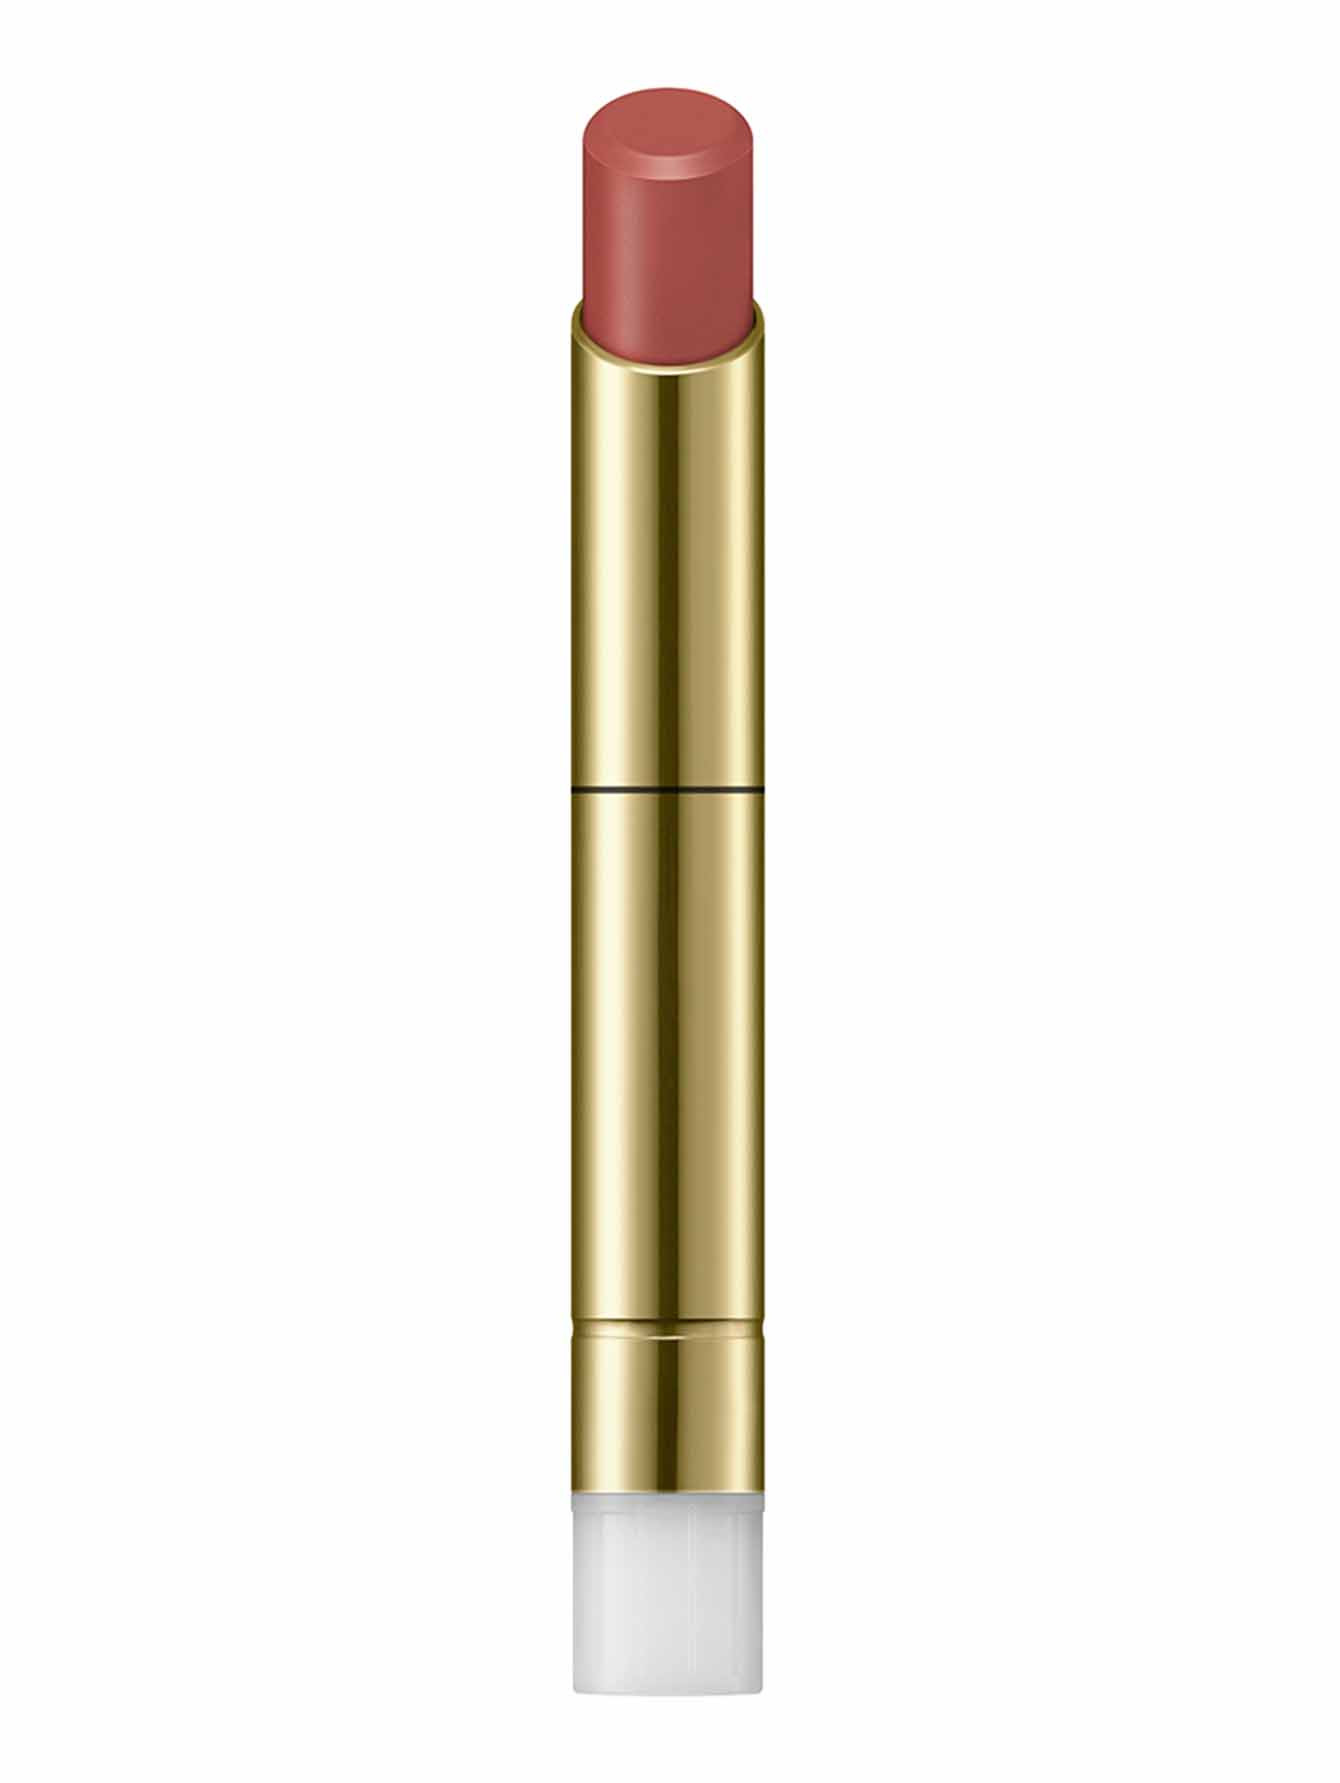 Рефил губной помады Contouring Lipstick, СL08 Beige Pink, 2 г - Общий вид